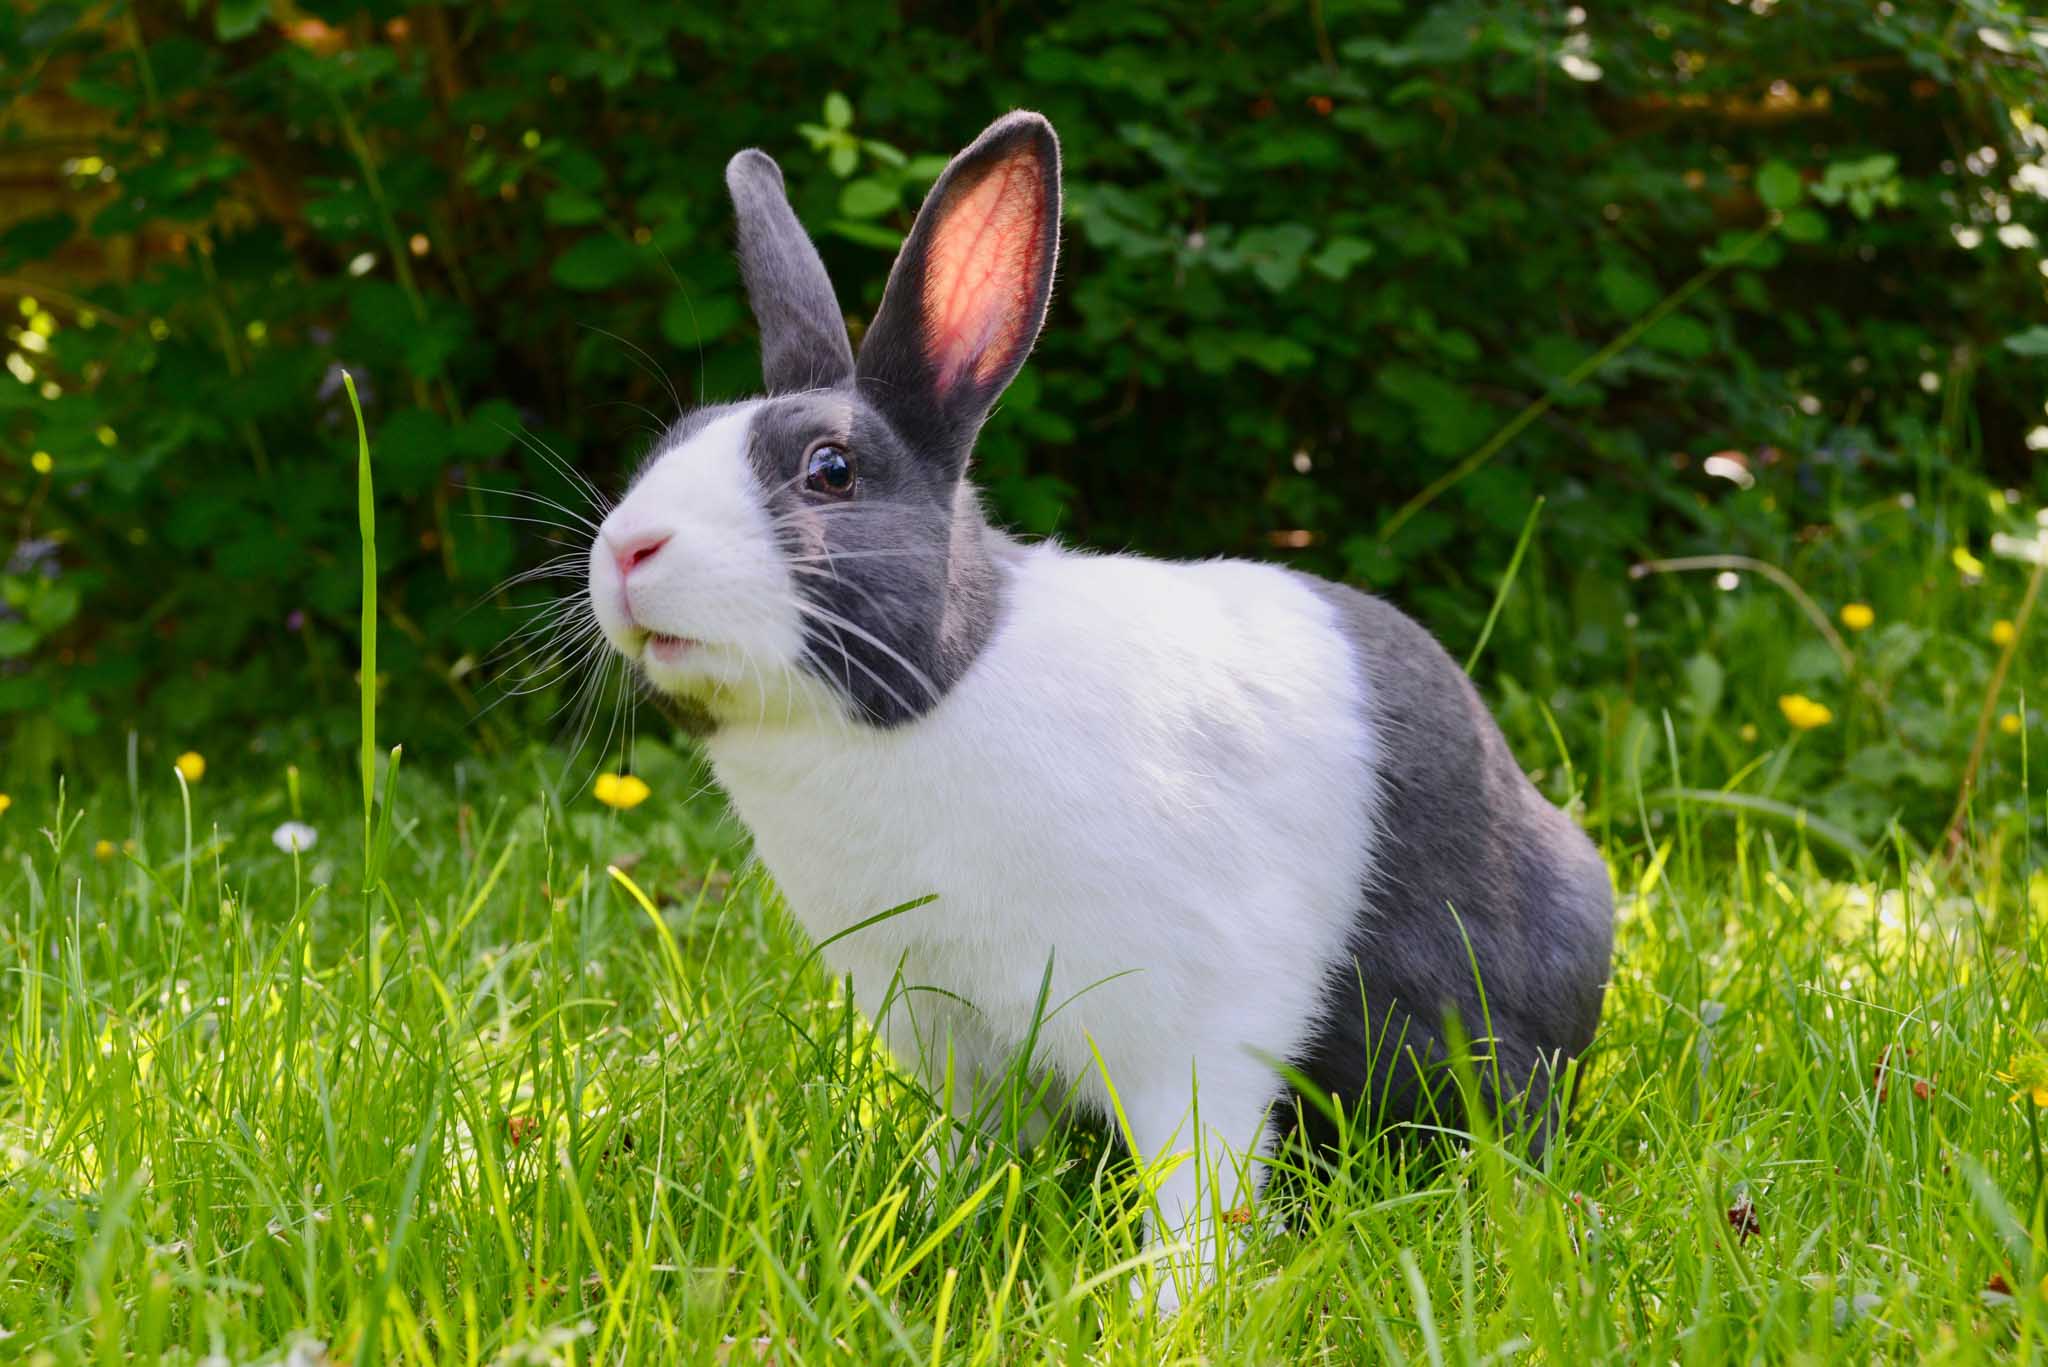 复活节来临 救援组织敦促人们不要购买兔子作为礼物